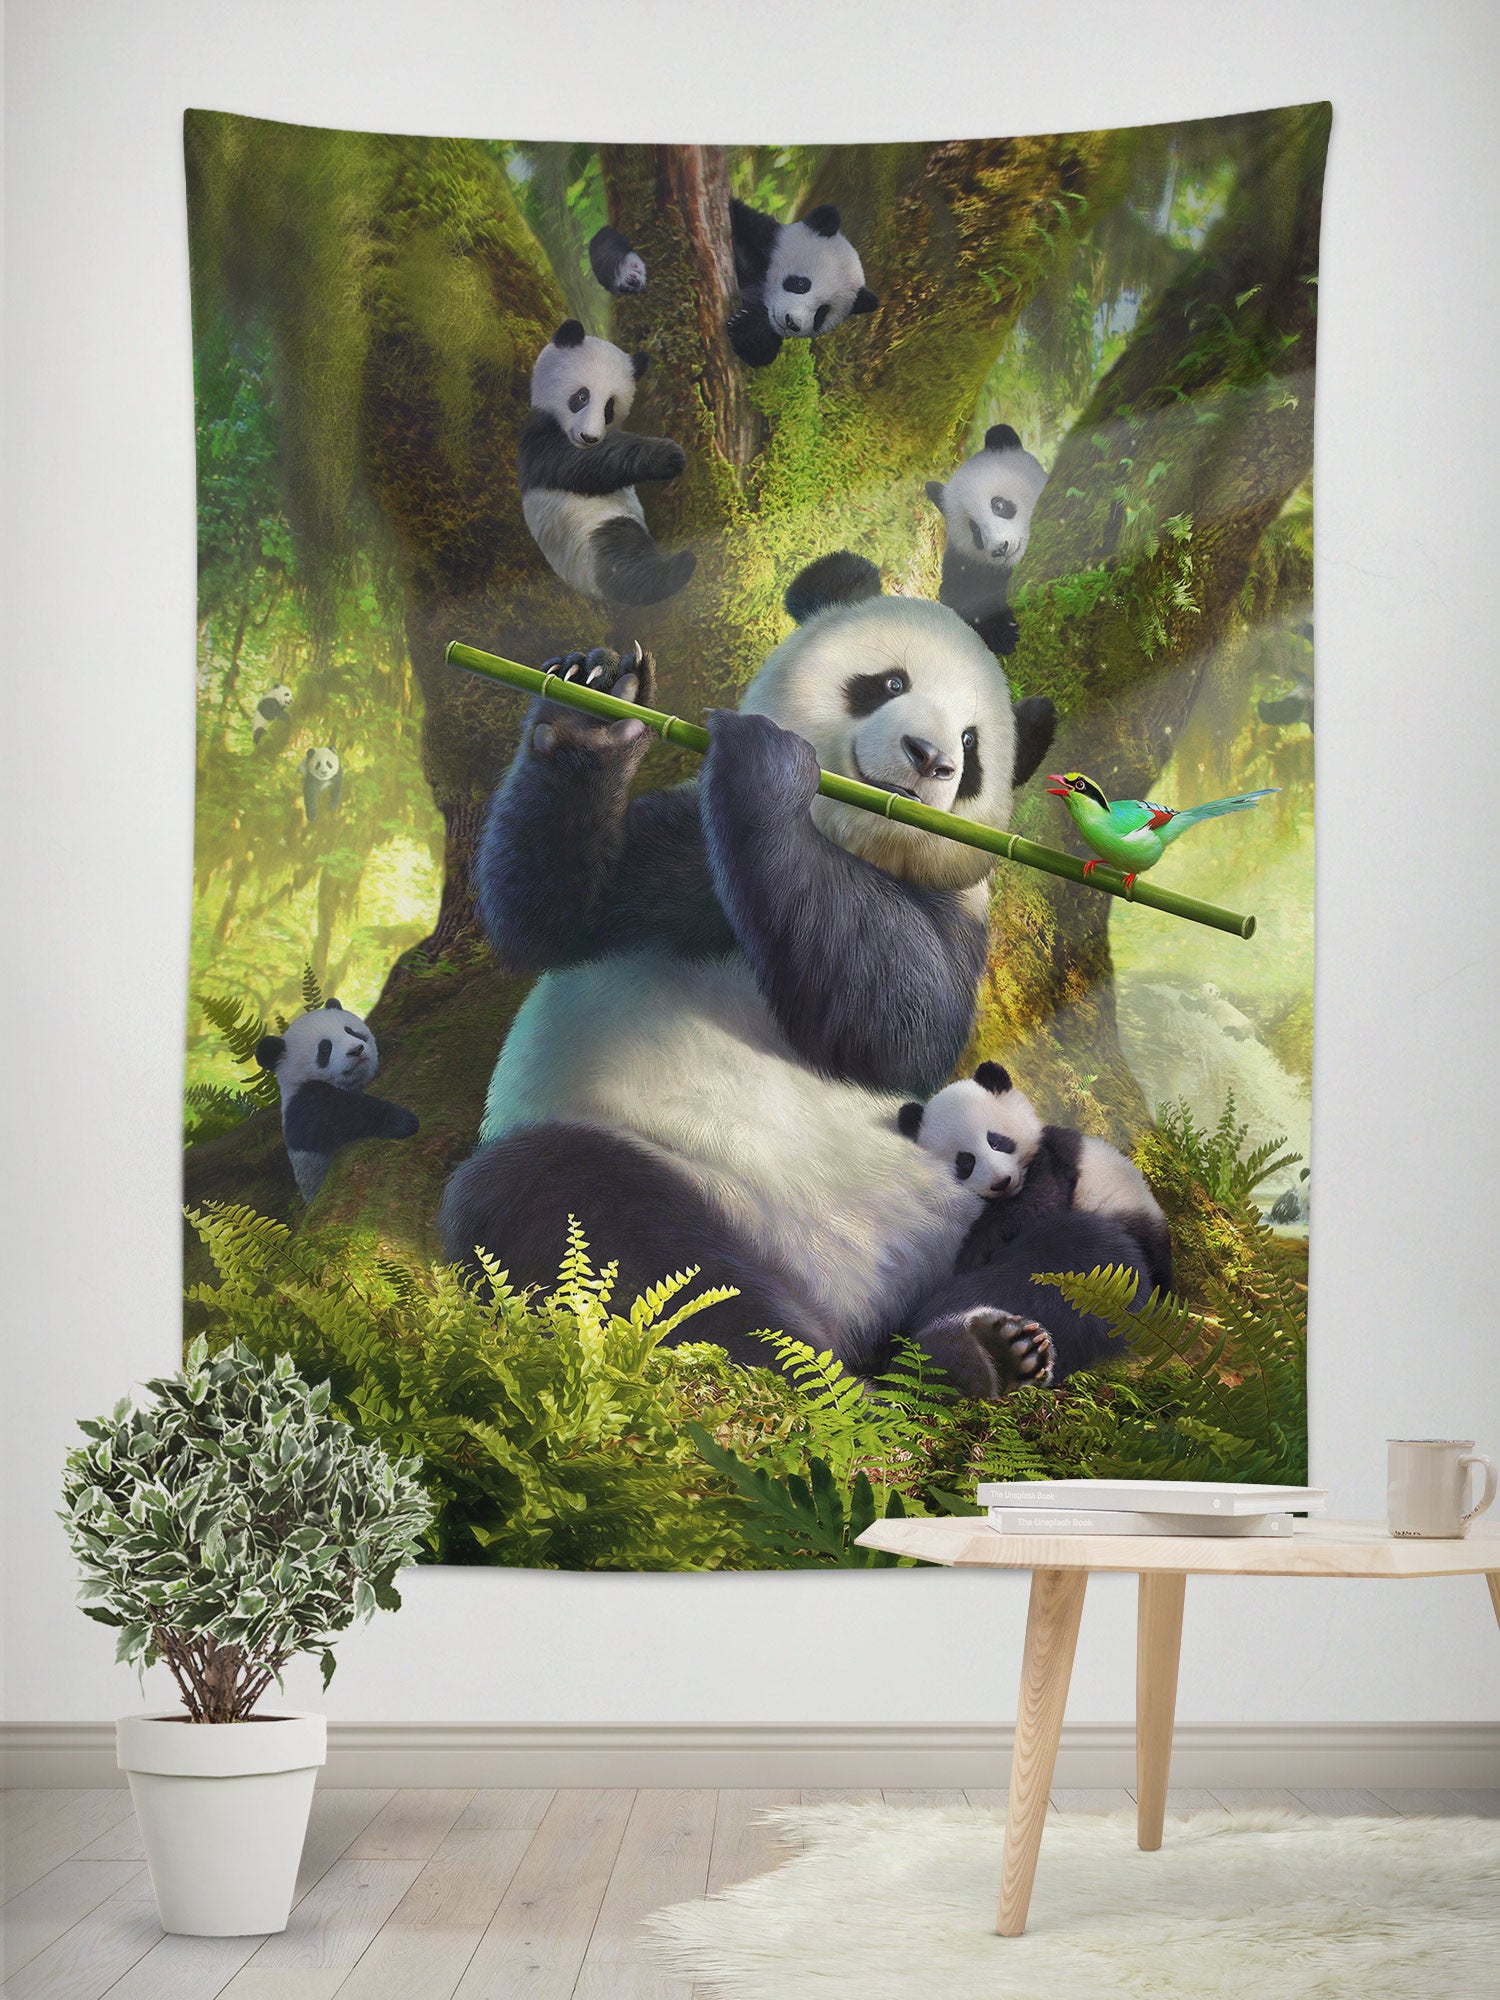 3D Panda 111155 Jerry LoFaro Tapestry Hanging Cloth Hang